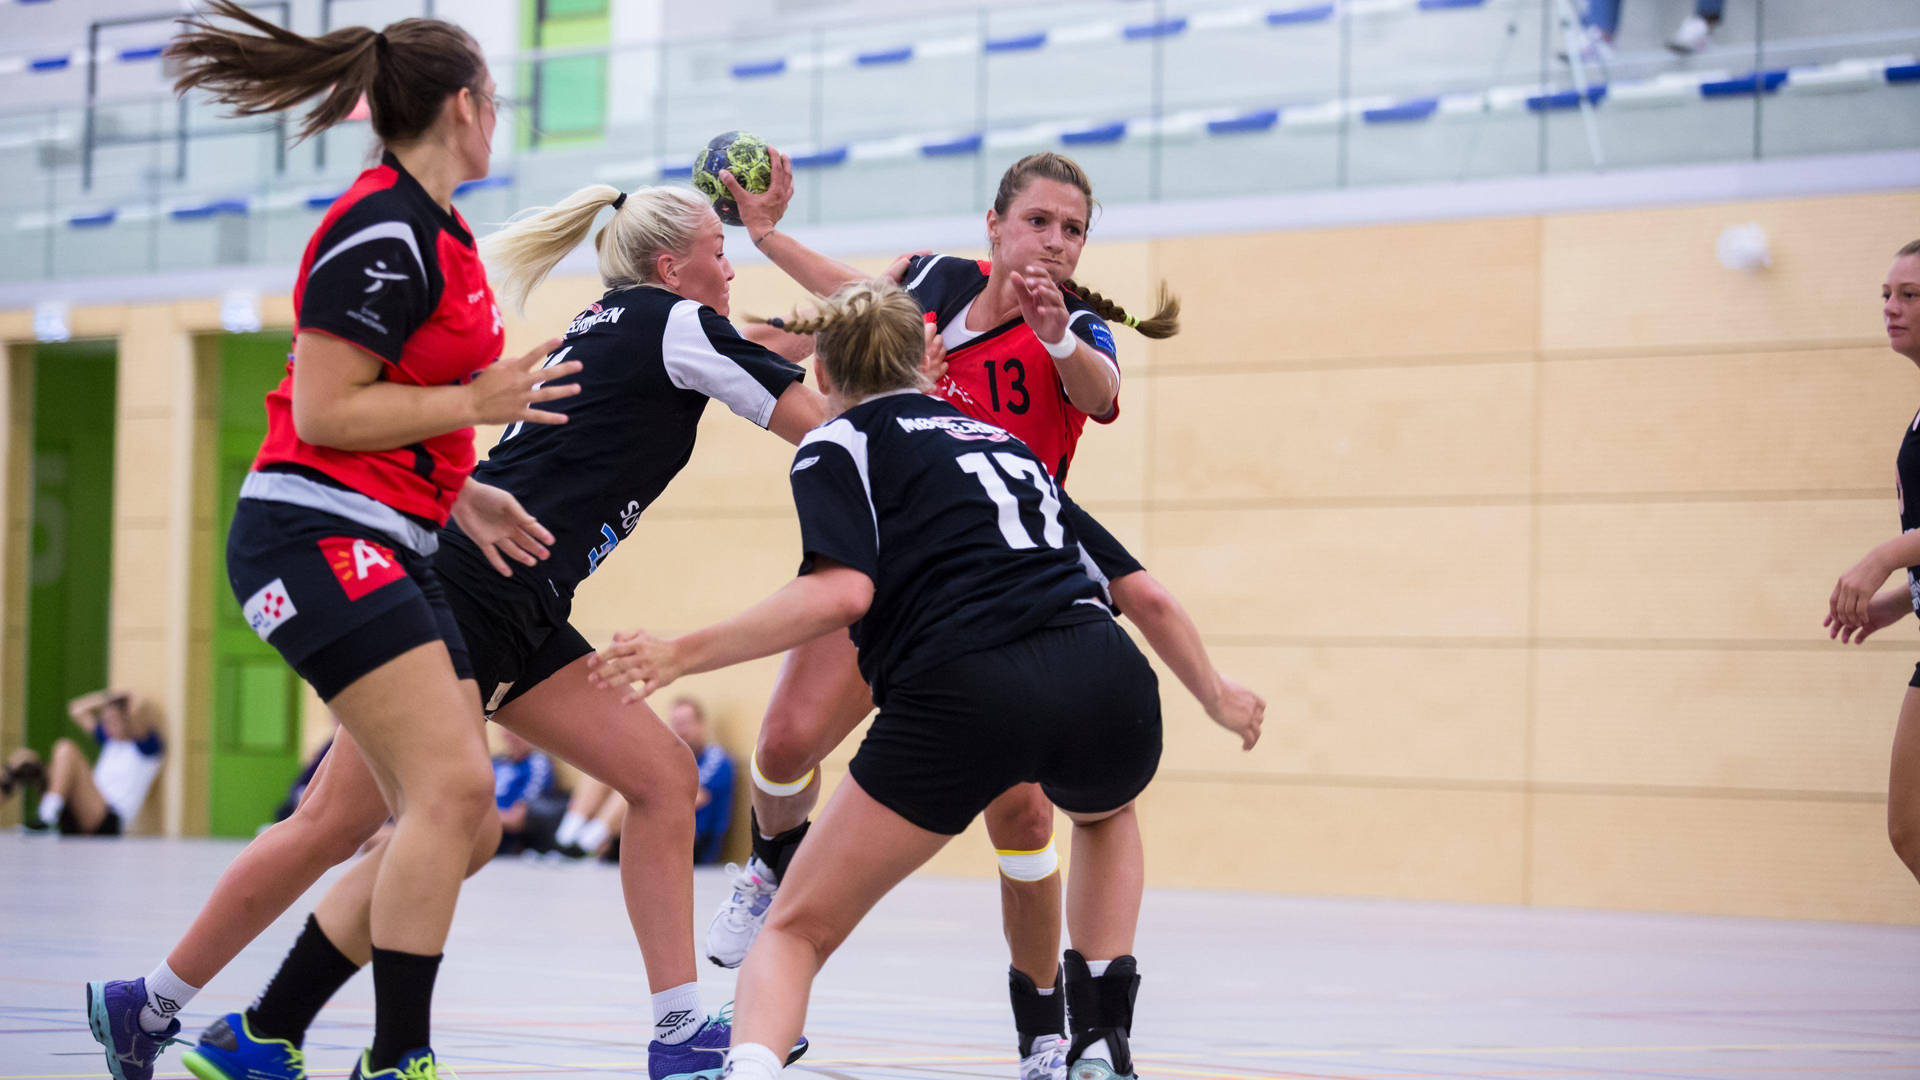 Handball Women's Game Background